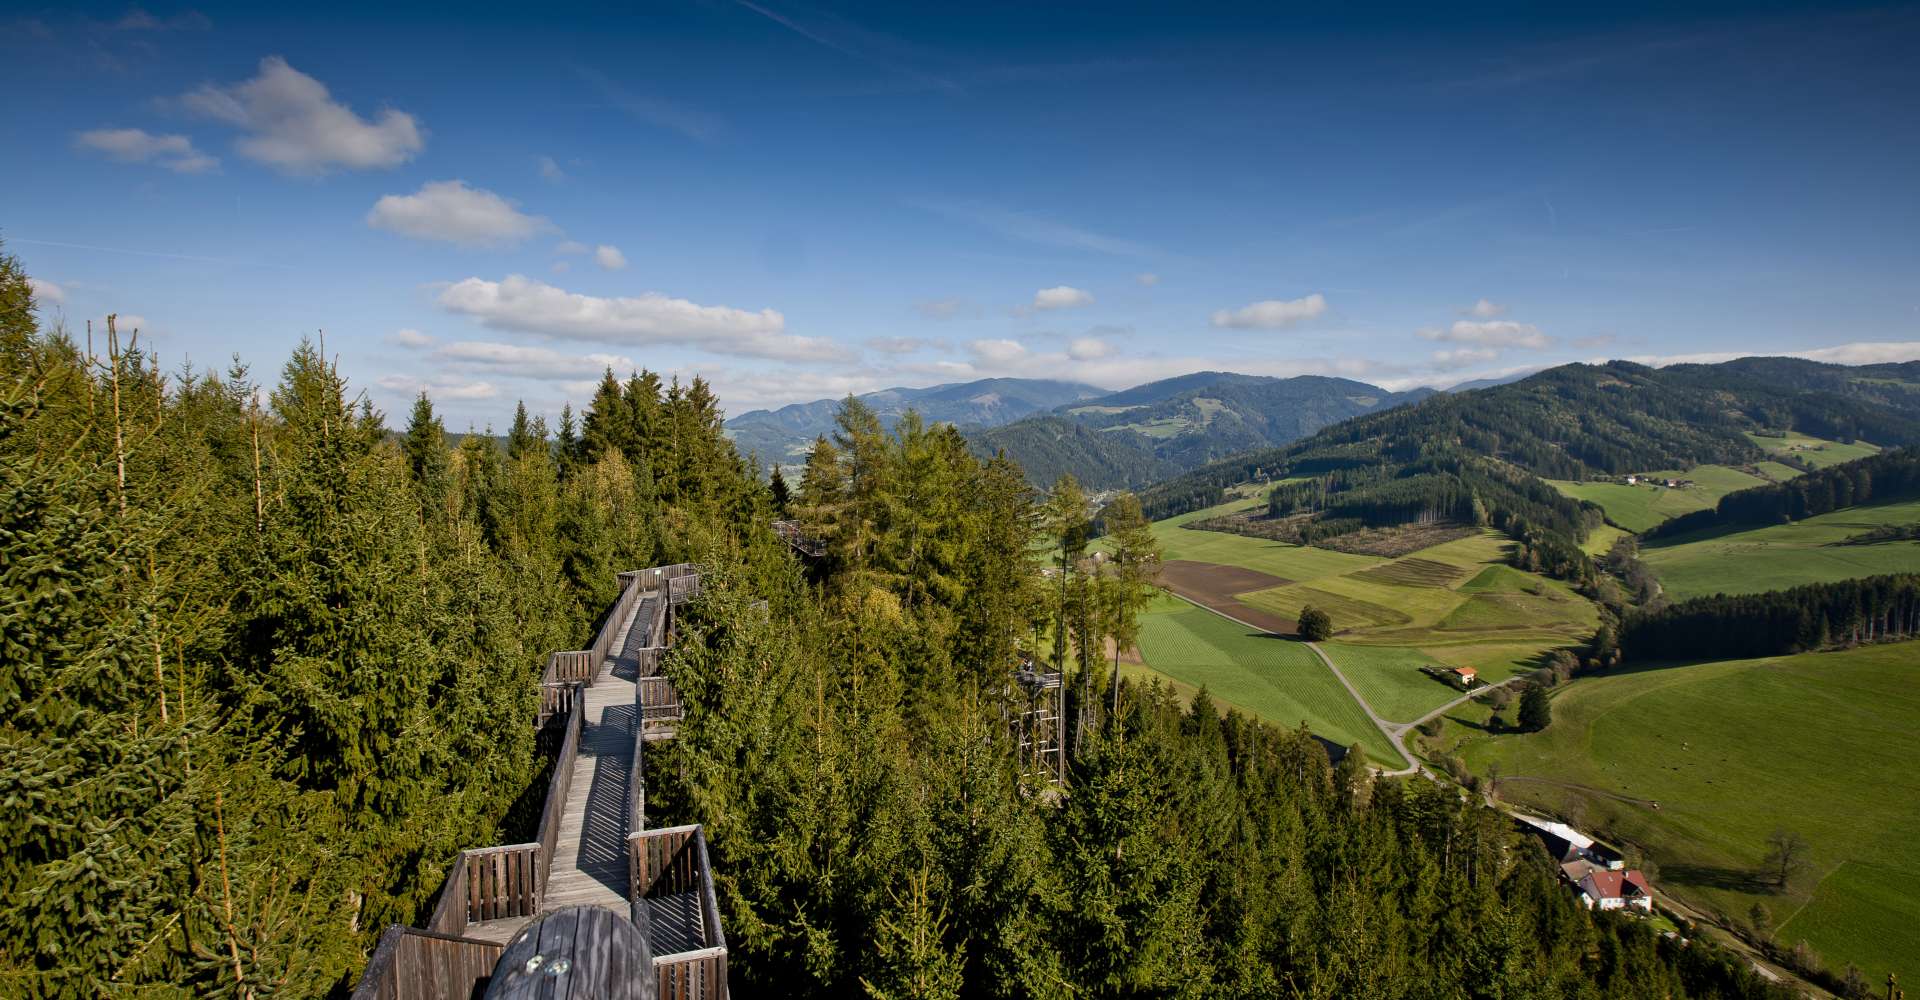 <p>Der Wipfelwanderweg liegt im Murtal, Steiermark</p> Copyright: